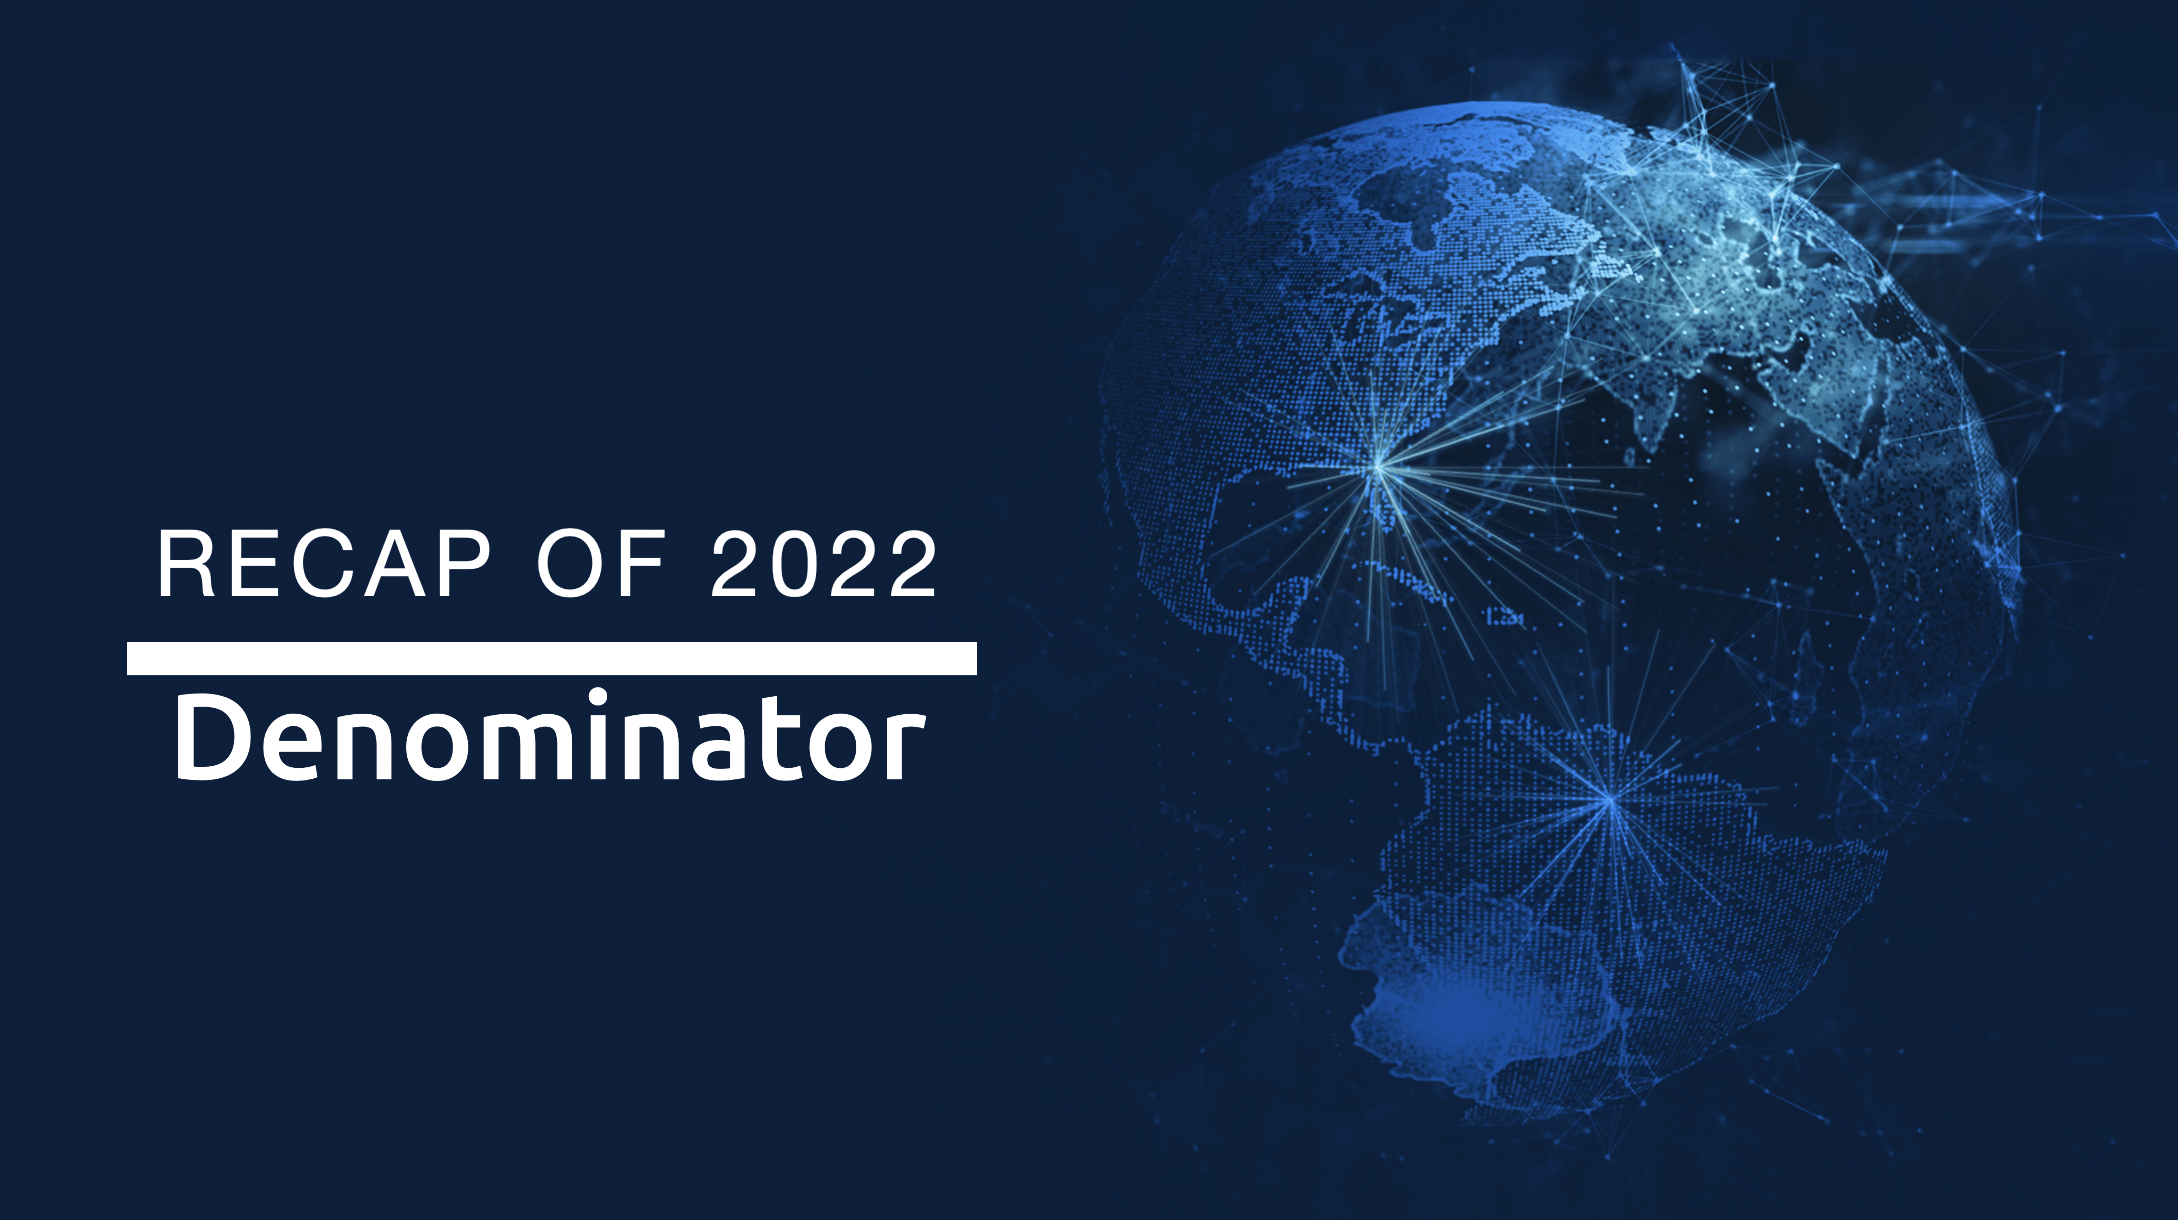 Denominator’s recap of 2022